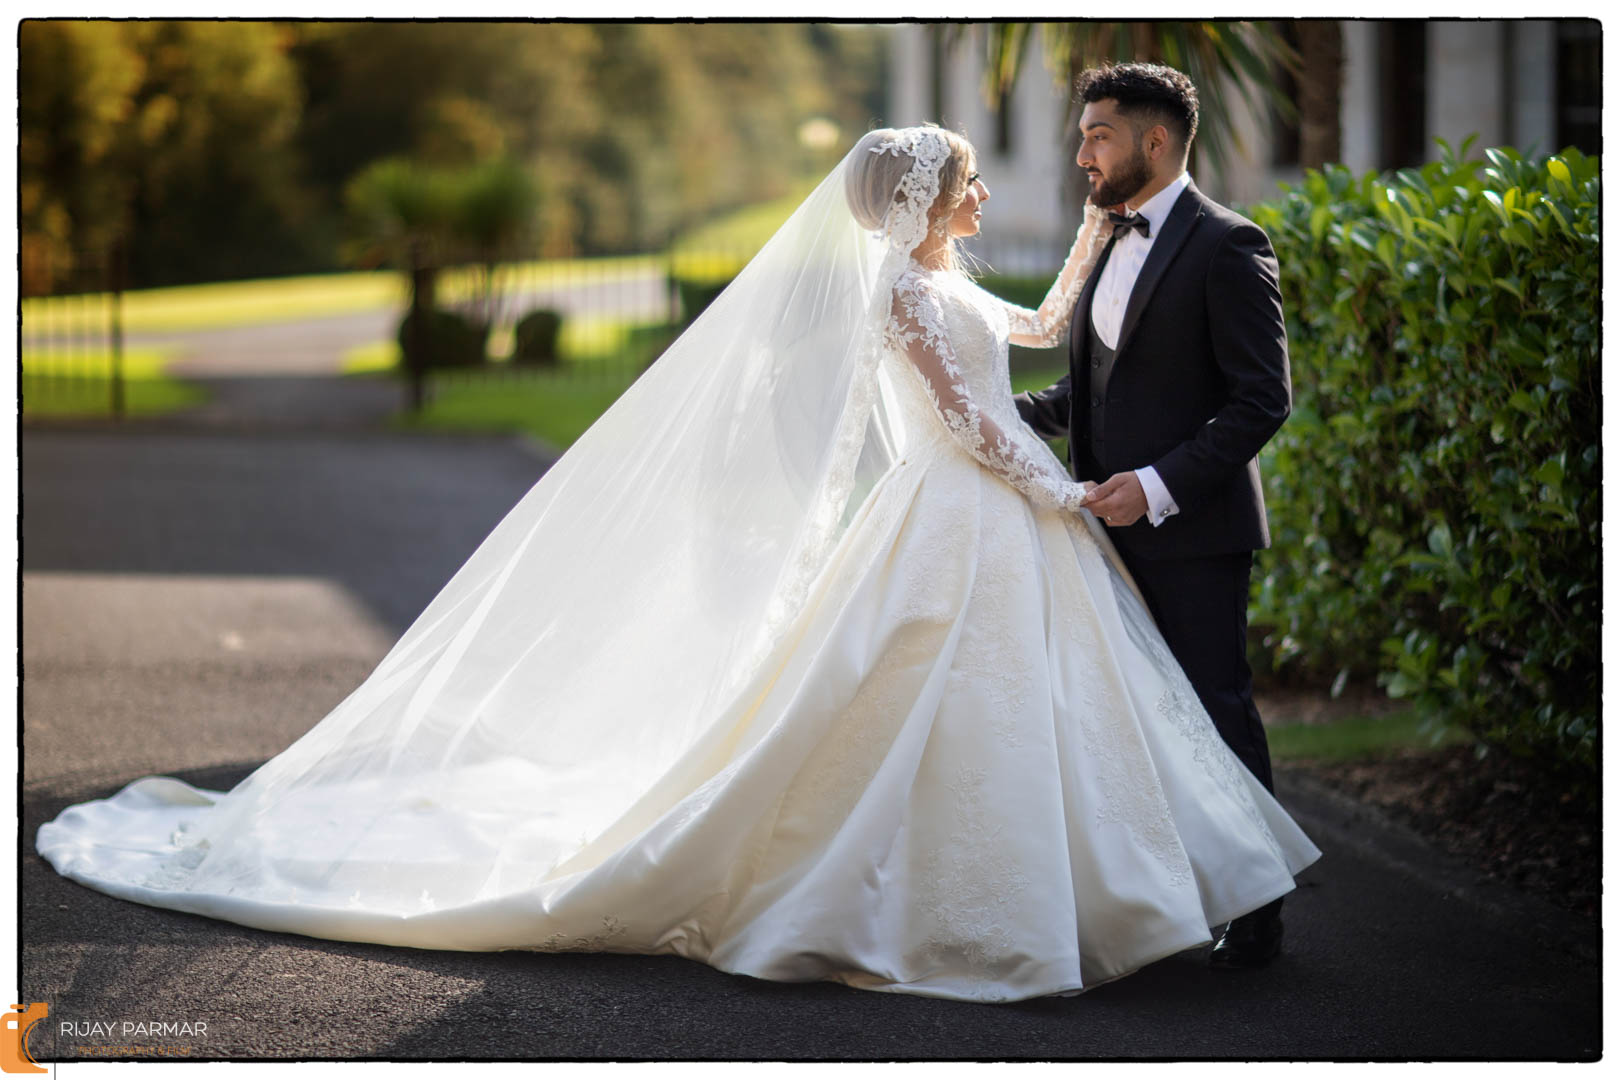 Mariya and Junaid's Indian wedding photography photoshoot Blackburn (16 of 17)